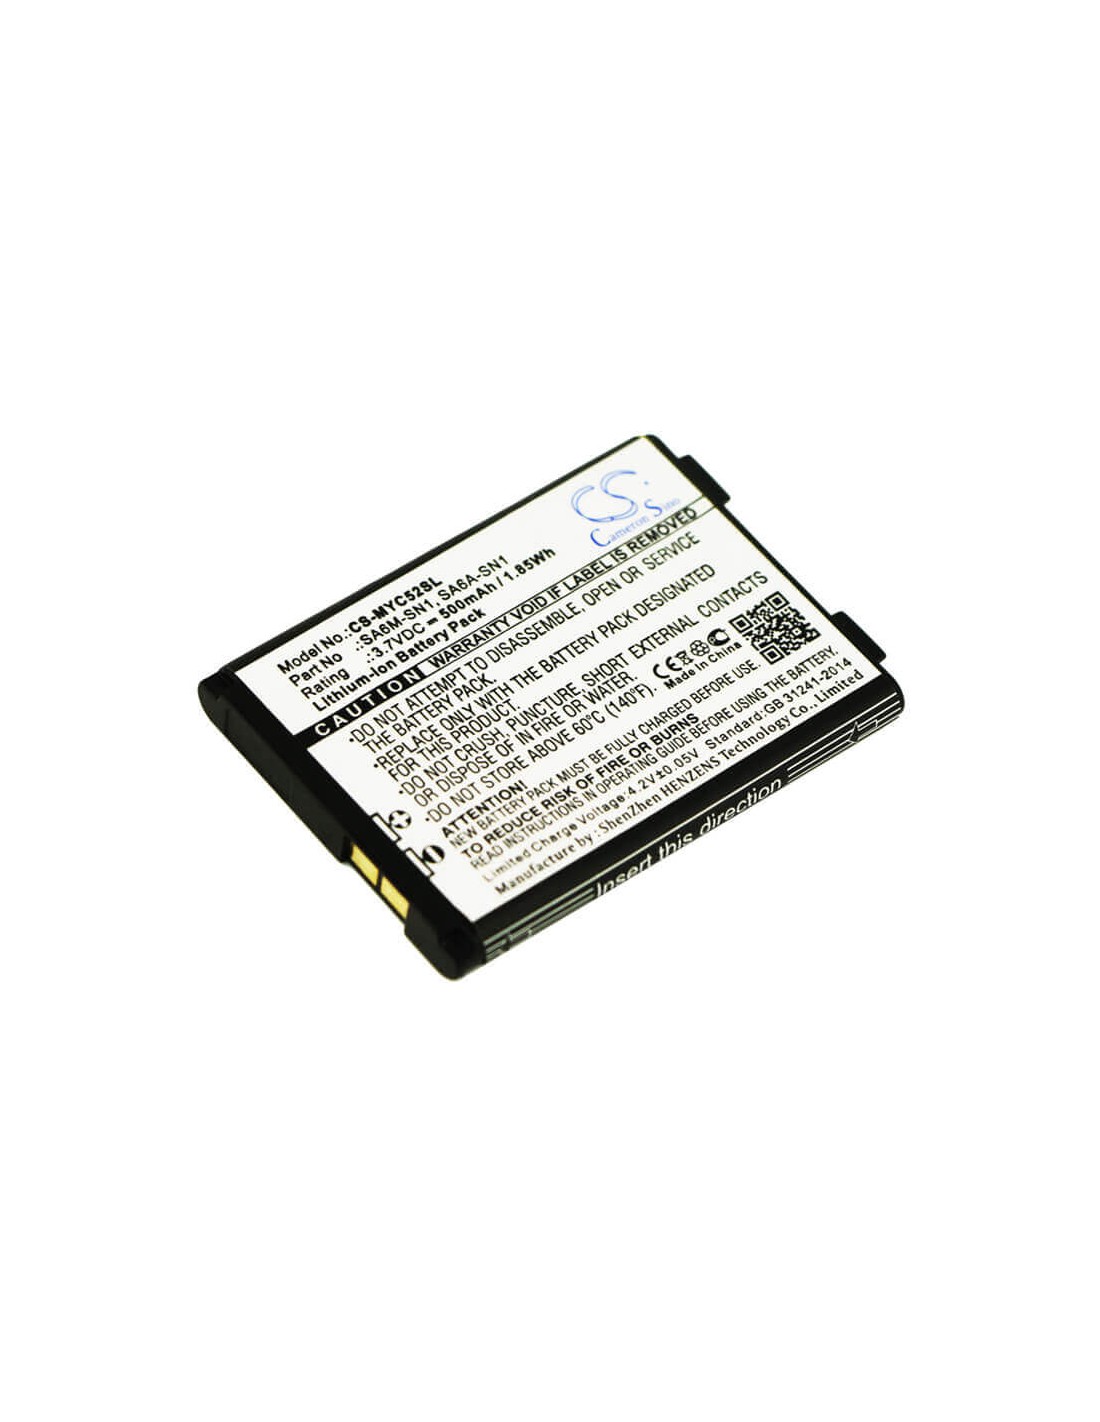 Battery for Sagem MYC5-2v, VS3, MYC5-2M 3.7V, 650mAh - 2.41Wh